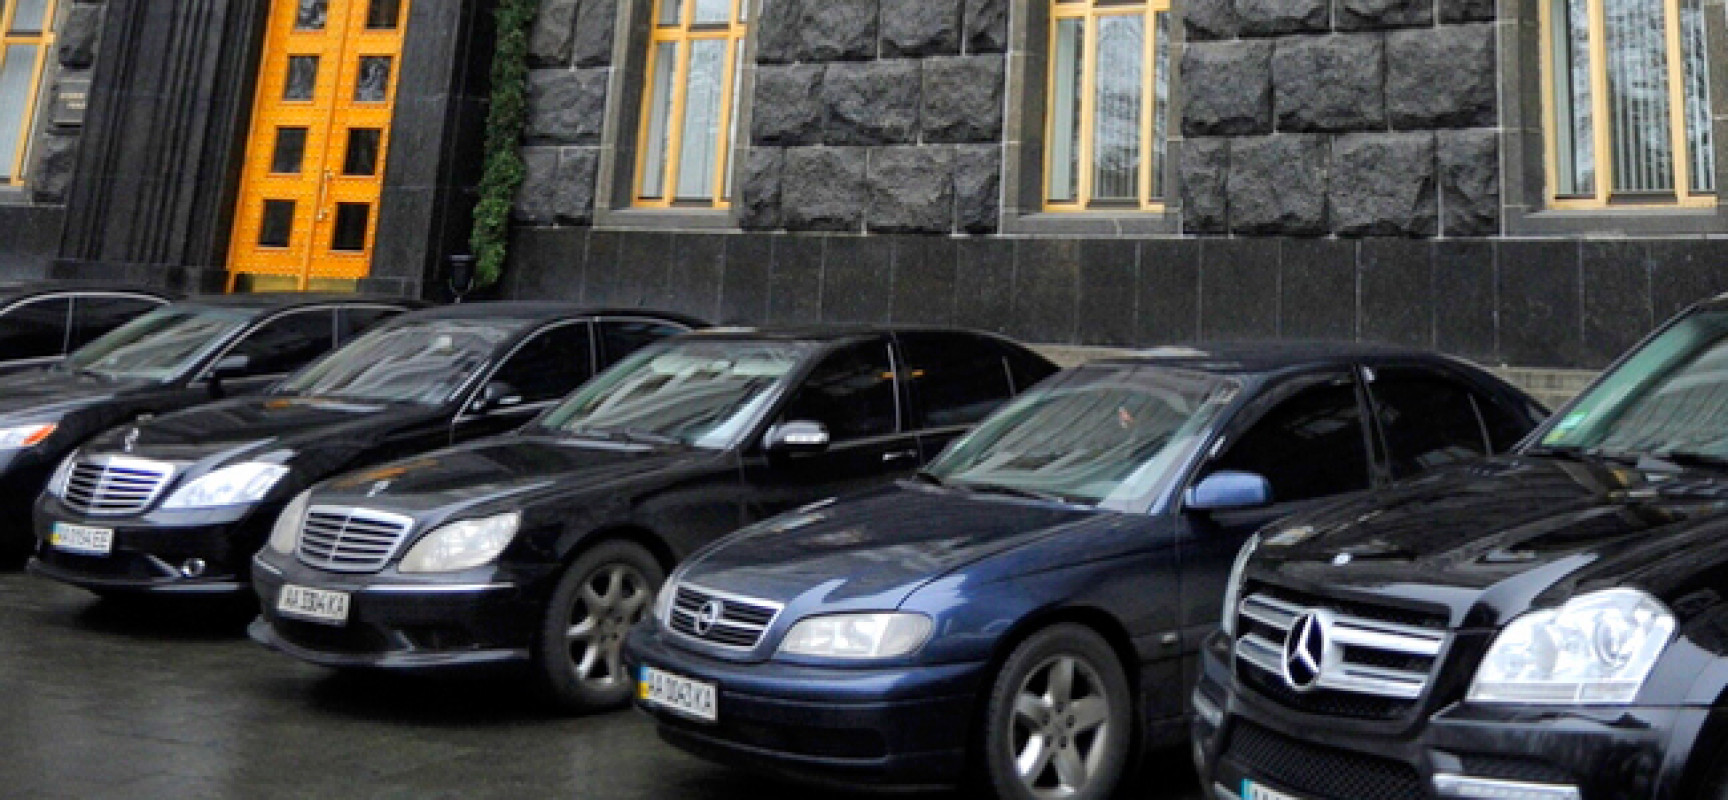 Депутаты Верховной Рады жалуются на жилищные проблемы и старые автомобили